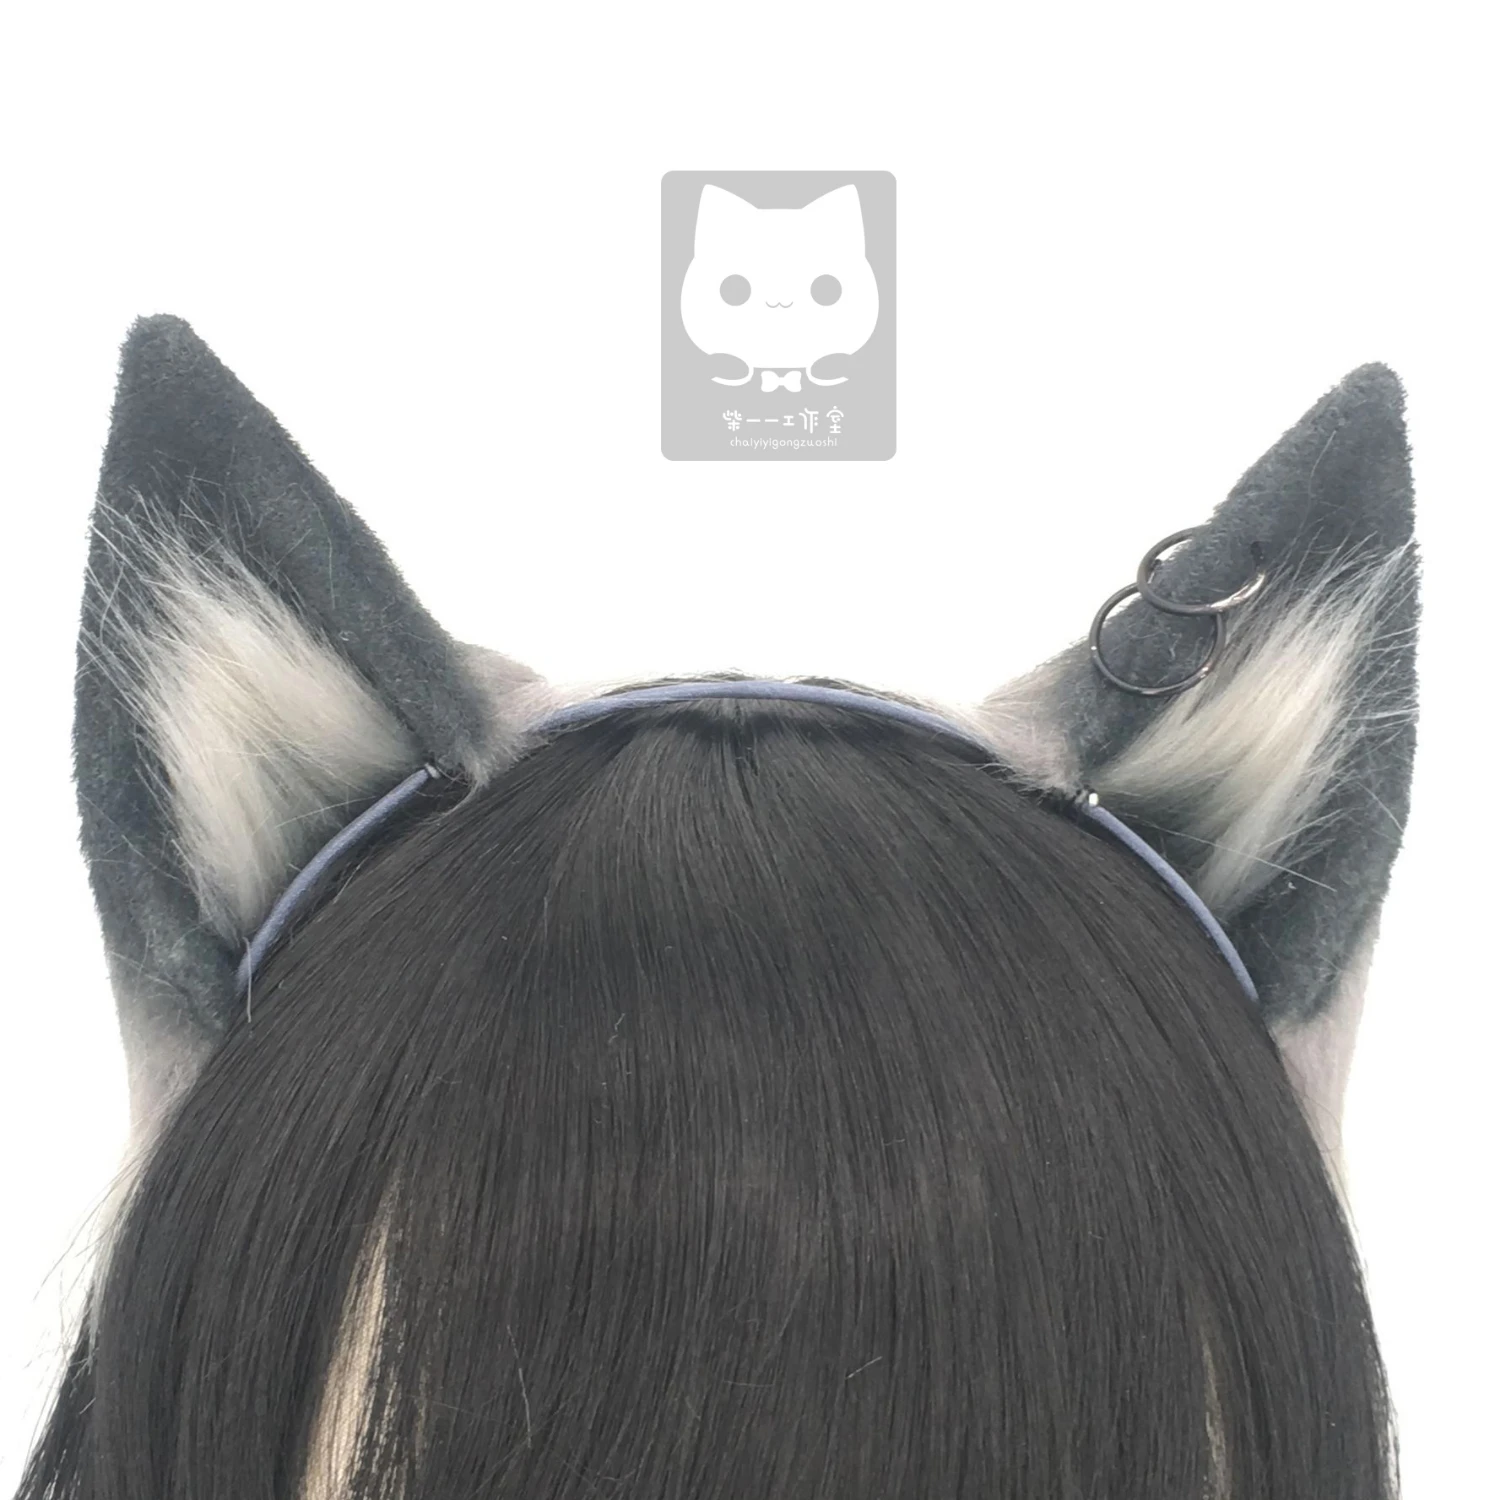 MMGG-Diadema con orejas de zorro para disfraz de Lolita, Arknights, Texas, Gato Negro, Neko, Anime, accesorios para Cosplay